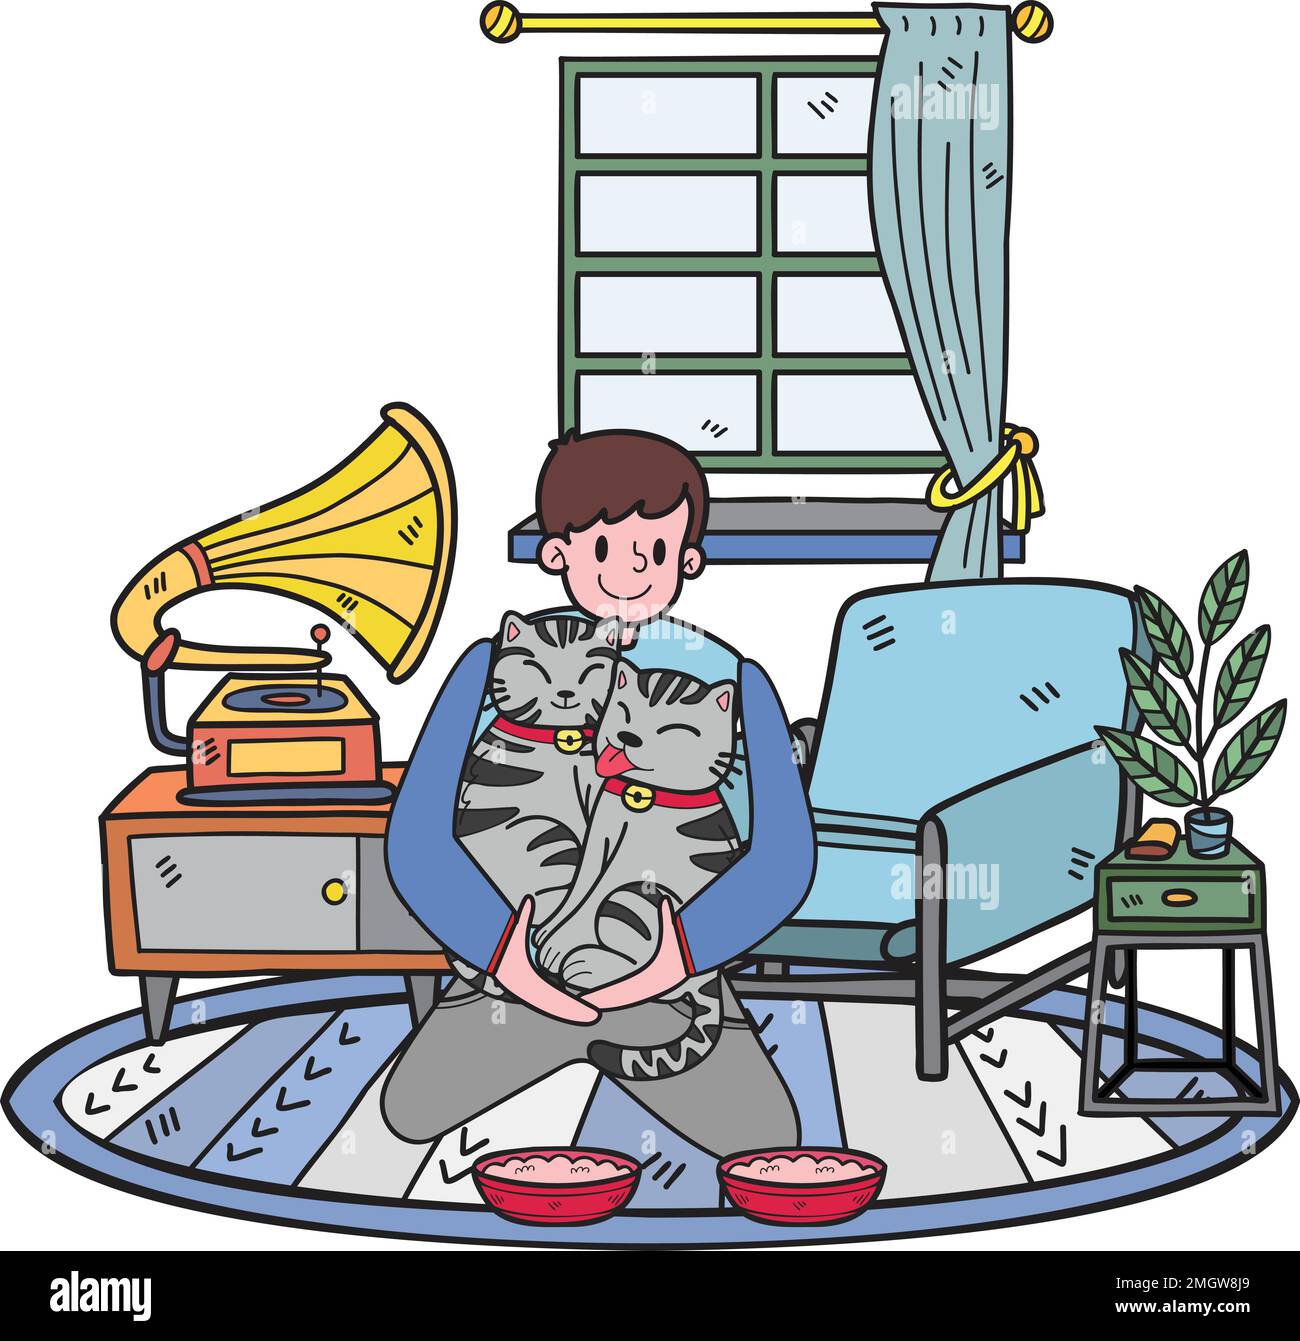 Disegnata a mano il proprietario alimenta i gatti nell'illustrazione della stanza in stile doodle isolato sullo sfondo Illustrazione Vettoriale